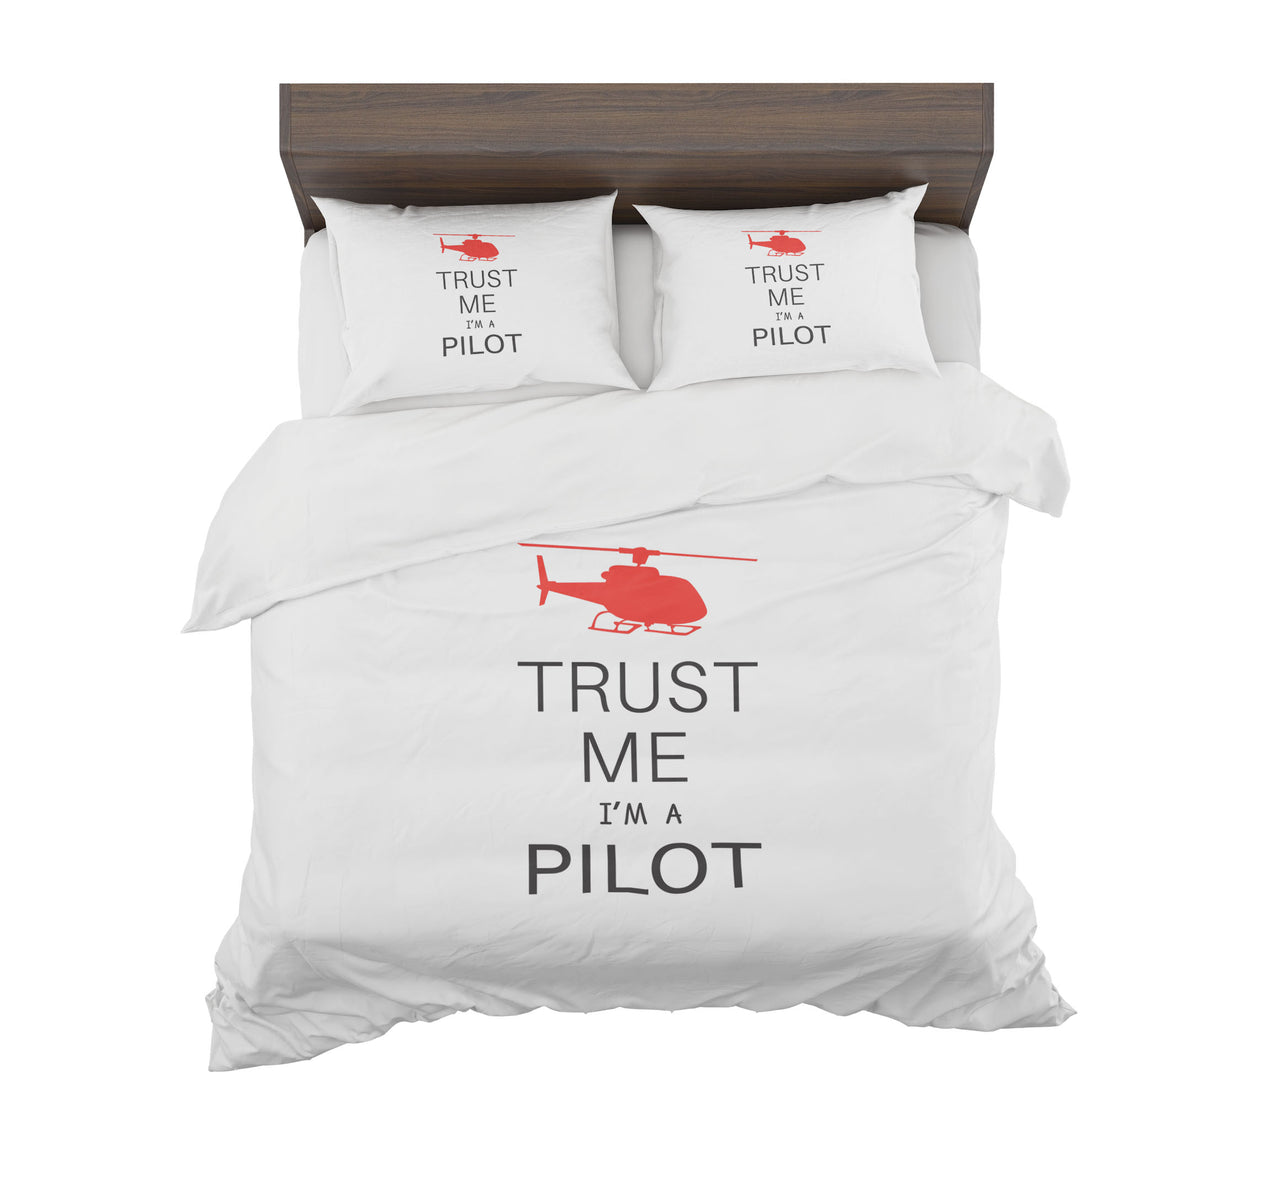 Trust Me I'm a Pilot (Helicopter) Designed Bedding Sets